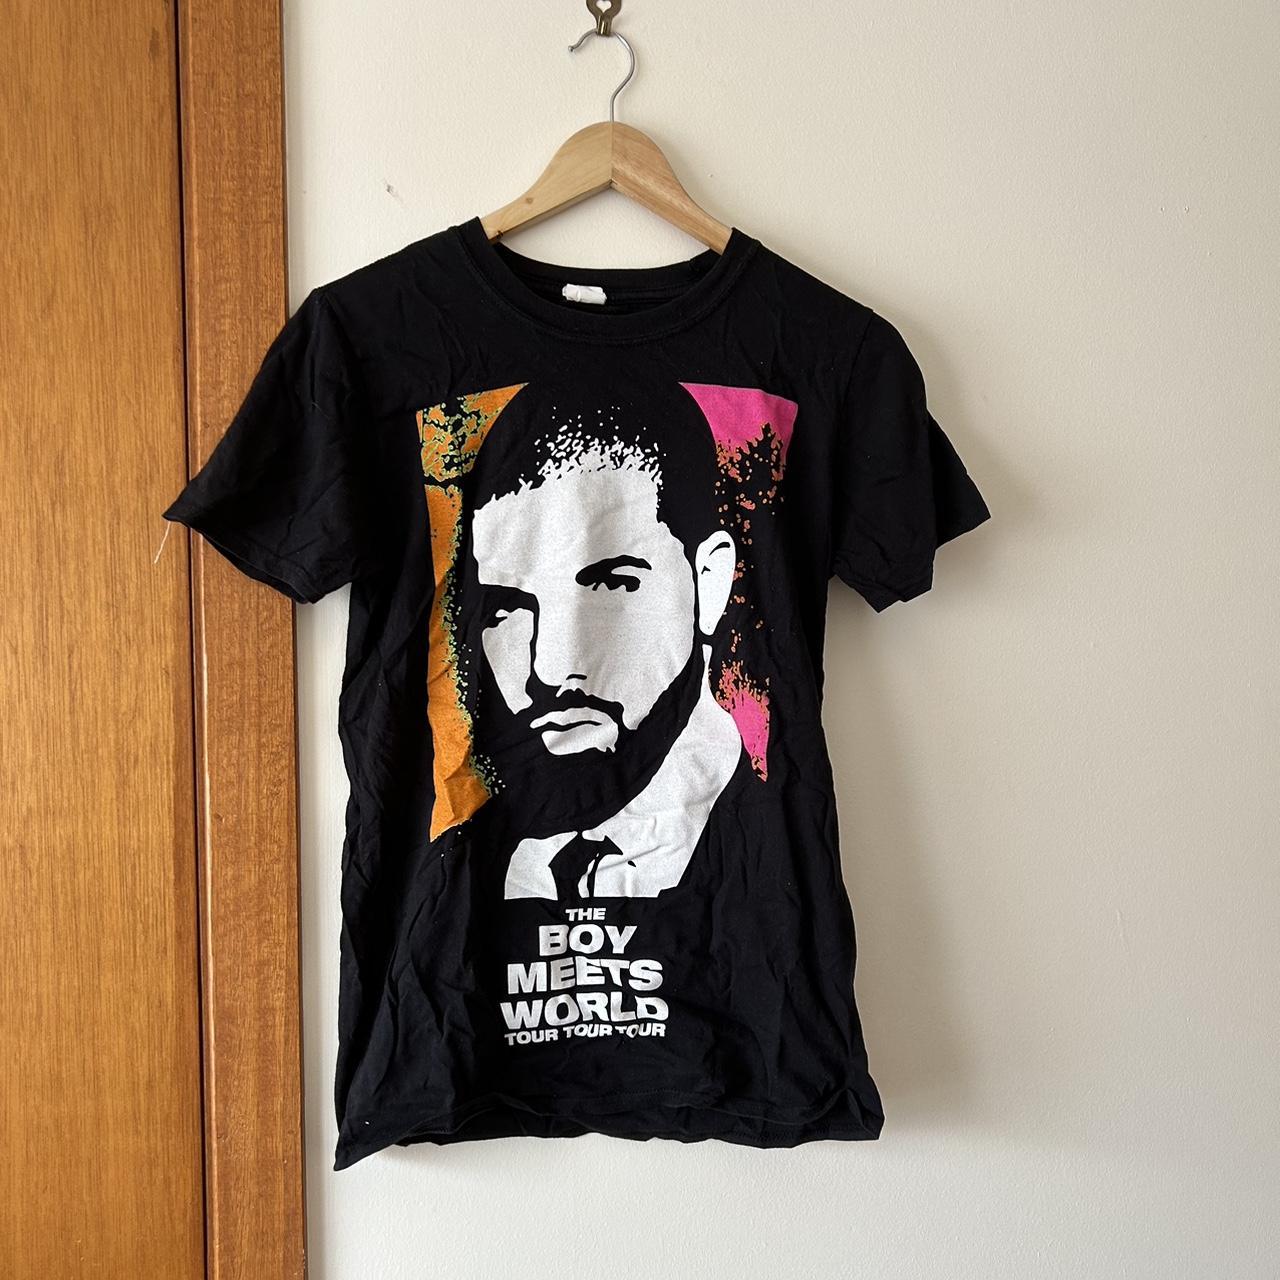 Drake Boy Meets World tour shirt 🧡 Never worn 🩷 - Depop